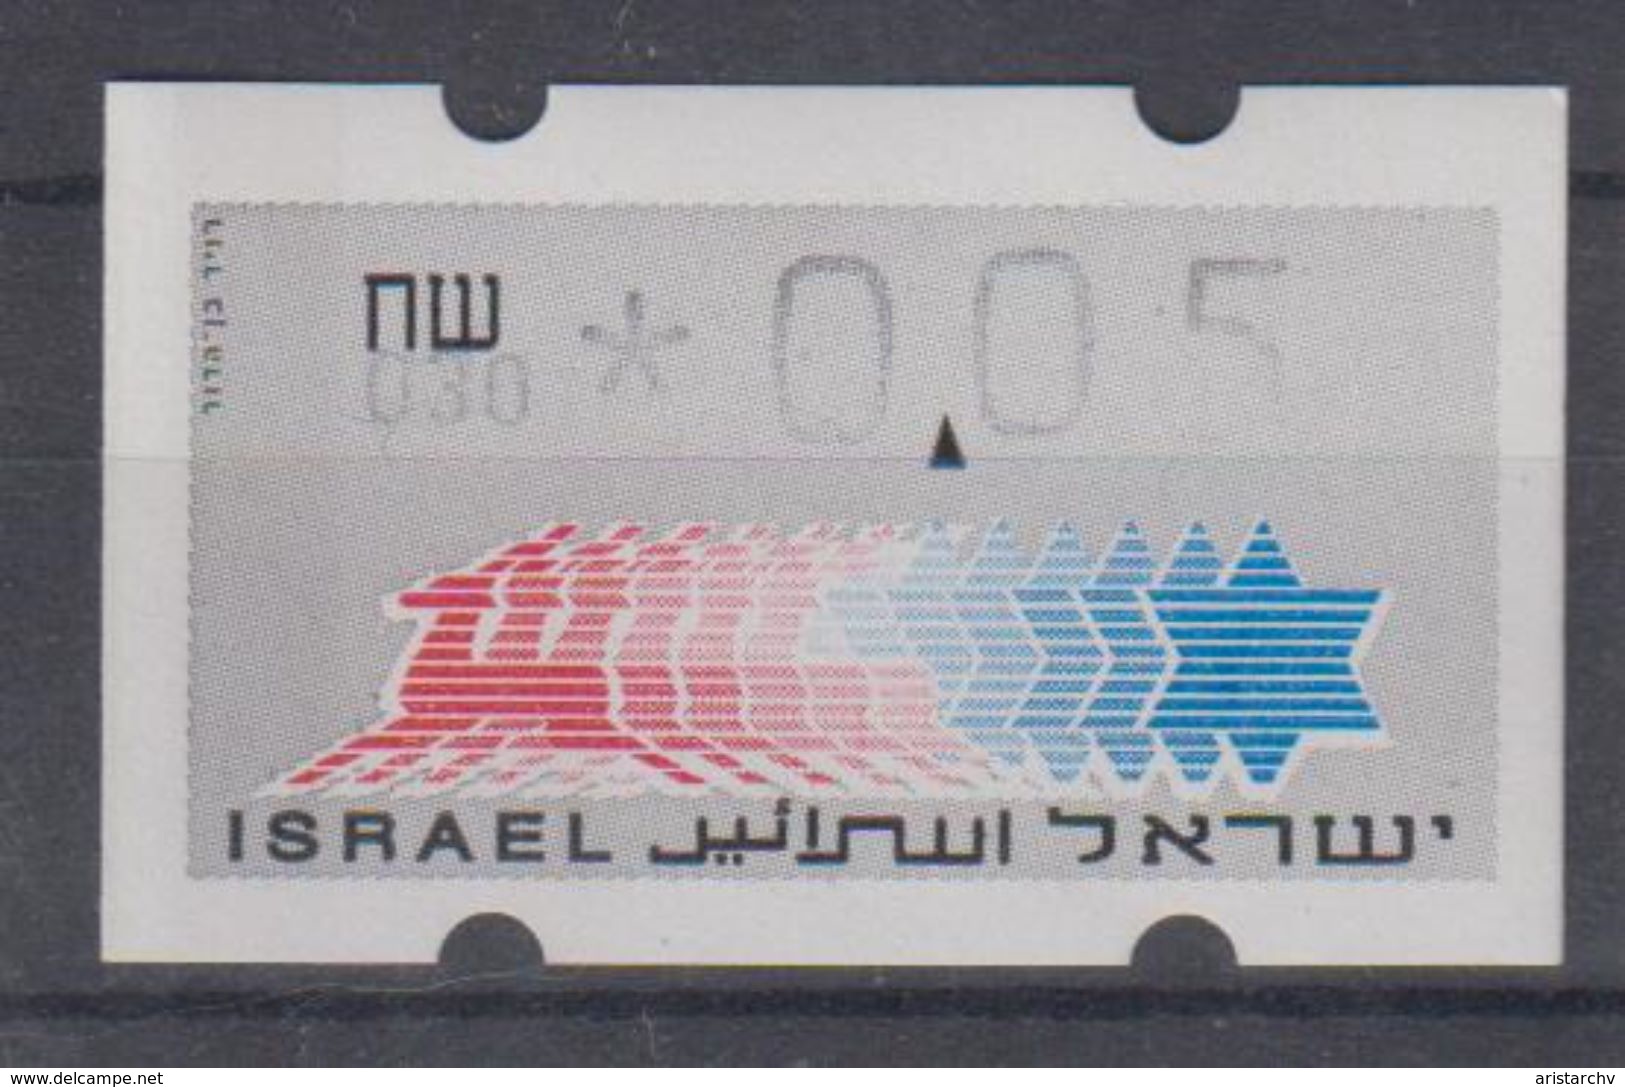 ISRAEL 1988 KLUSSENDORF ATM 0.05 SHEKELS 2 DIFFERENT KINDS OF PAPER NUMBER 030 - Viñetas De Franqueo (Frama)